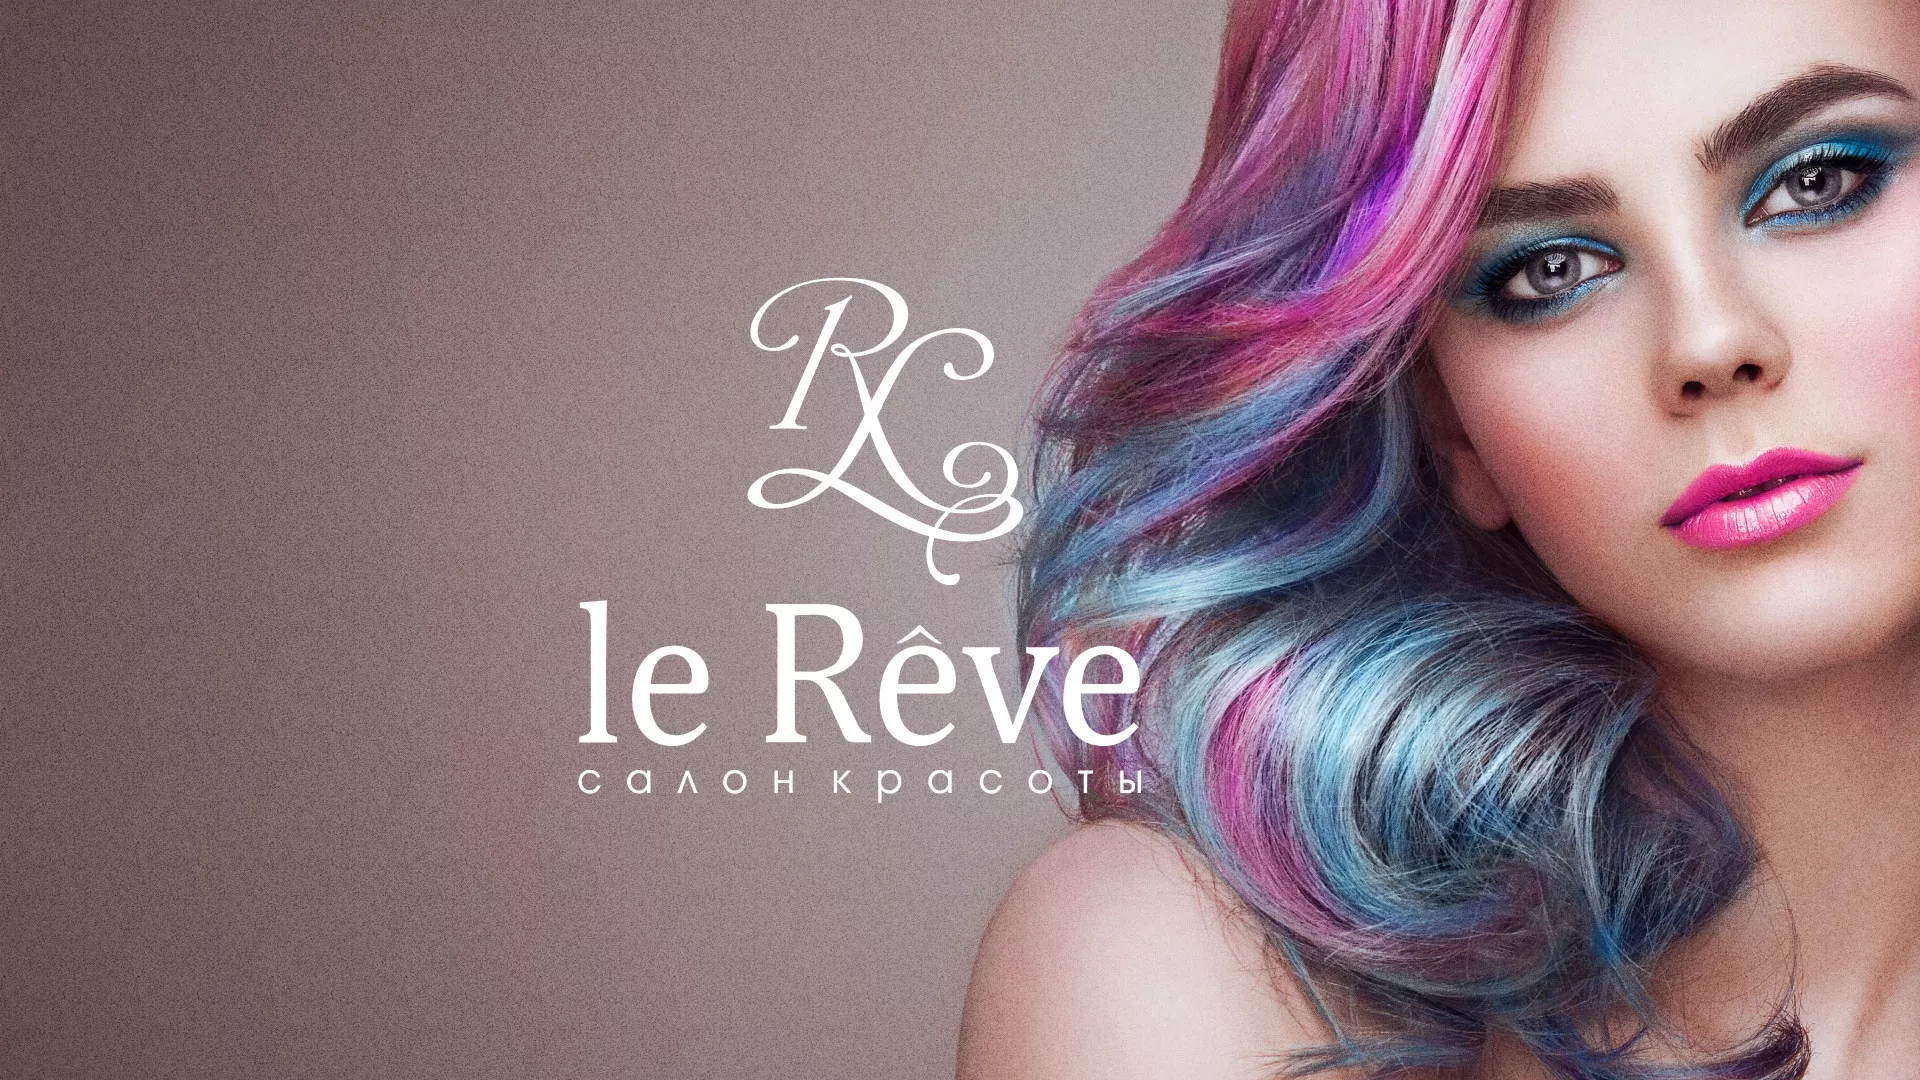 Создание сайта для салона красоты «Le Reve» в Светлогорске